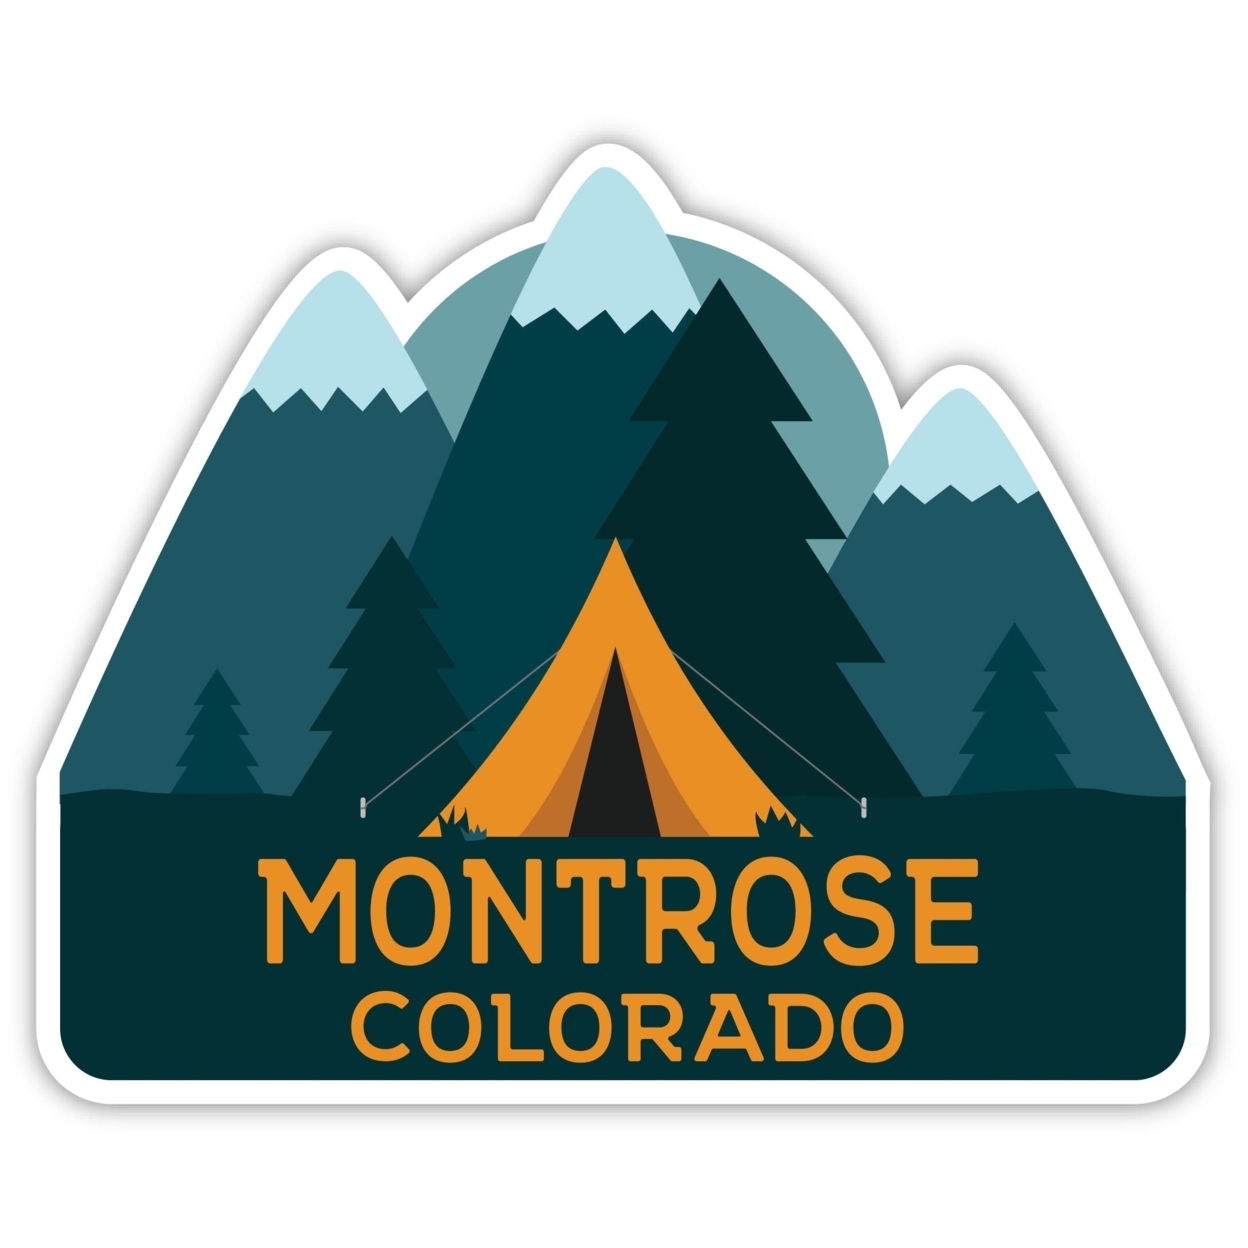 Montrose Colorado Souvenir Decorative Stickers (Choose Theme And Size) - Single Unit, 4-Inch, Tent